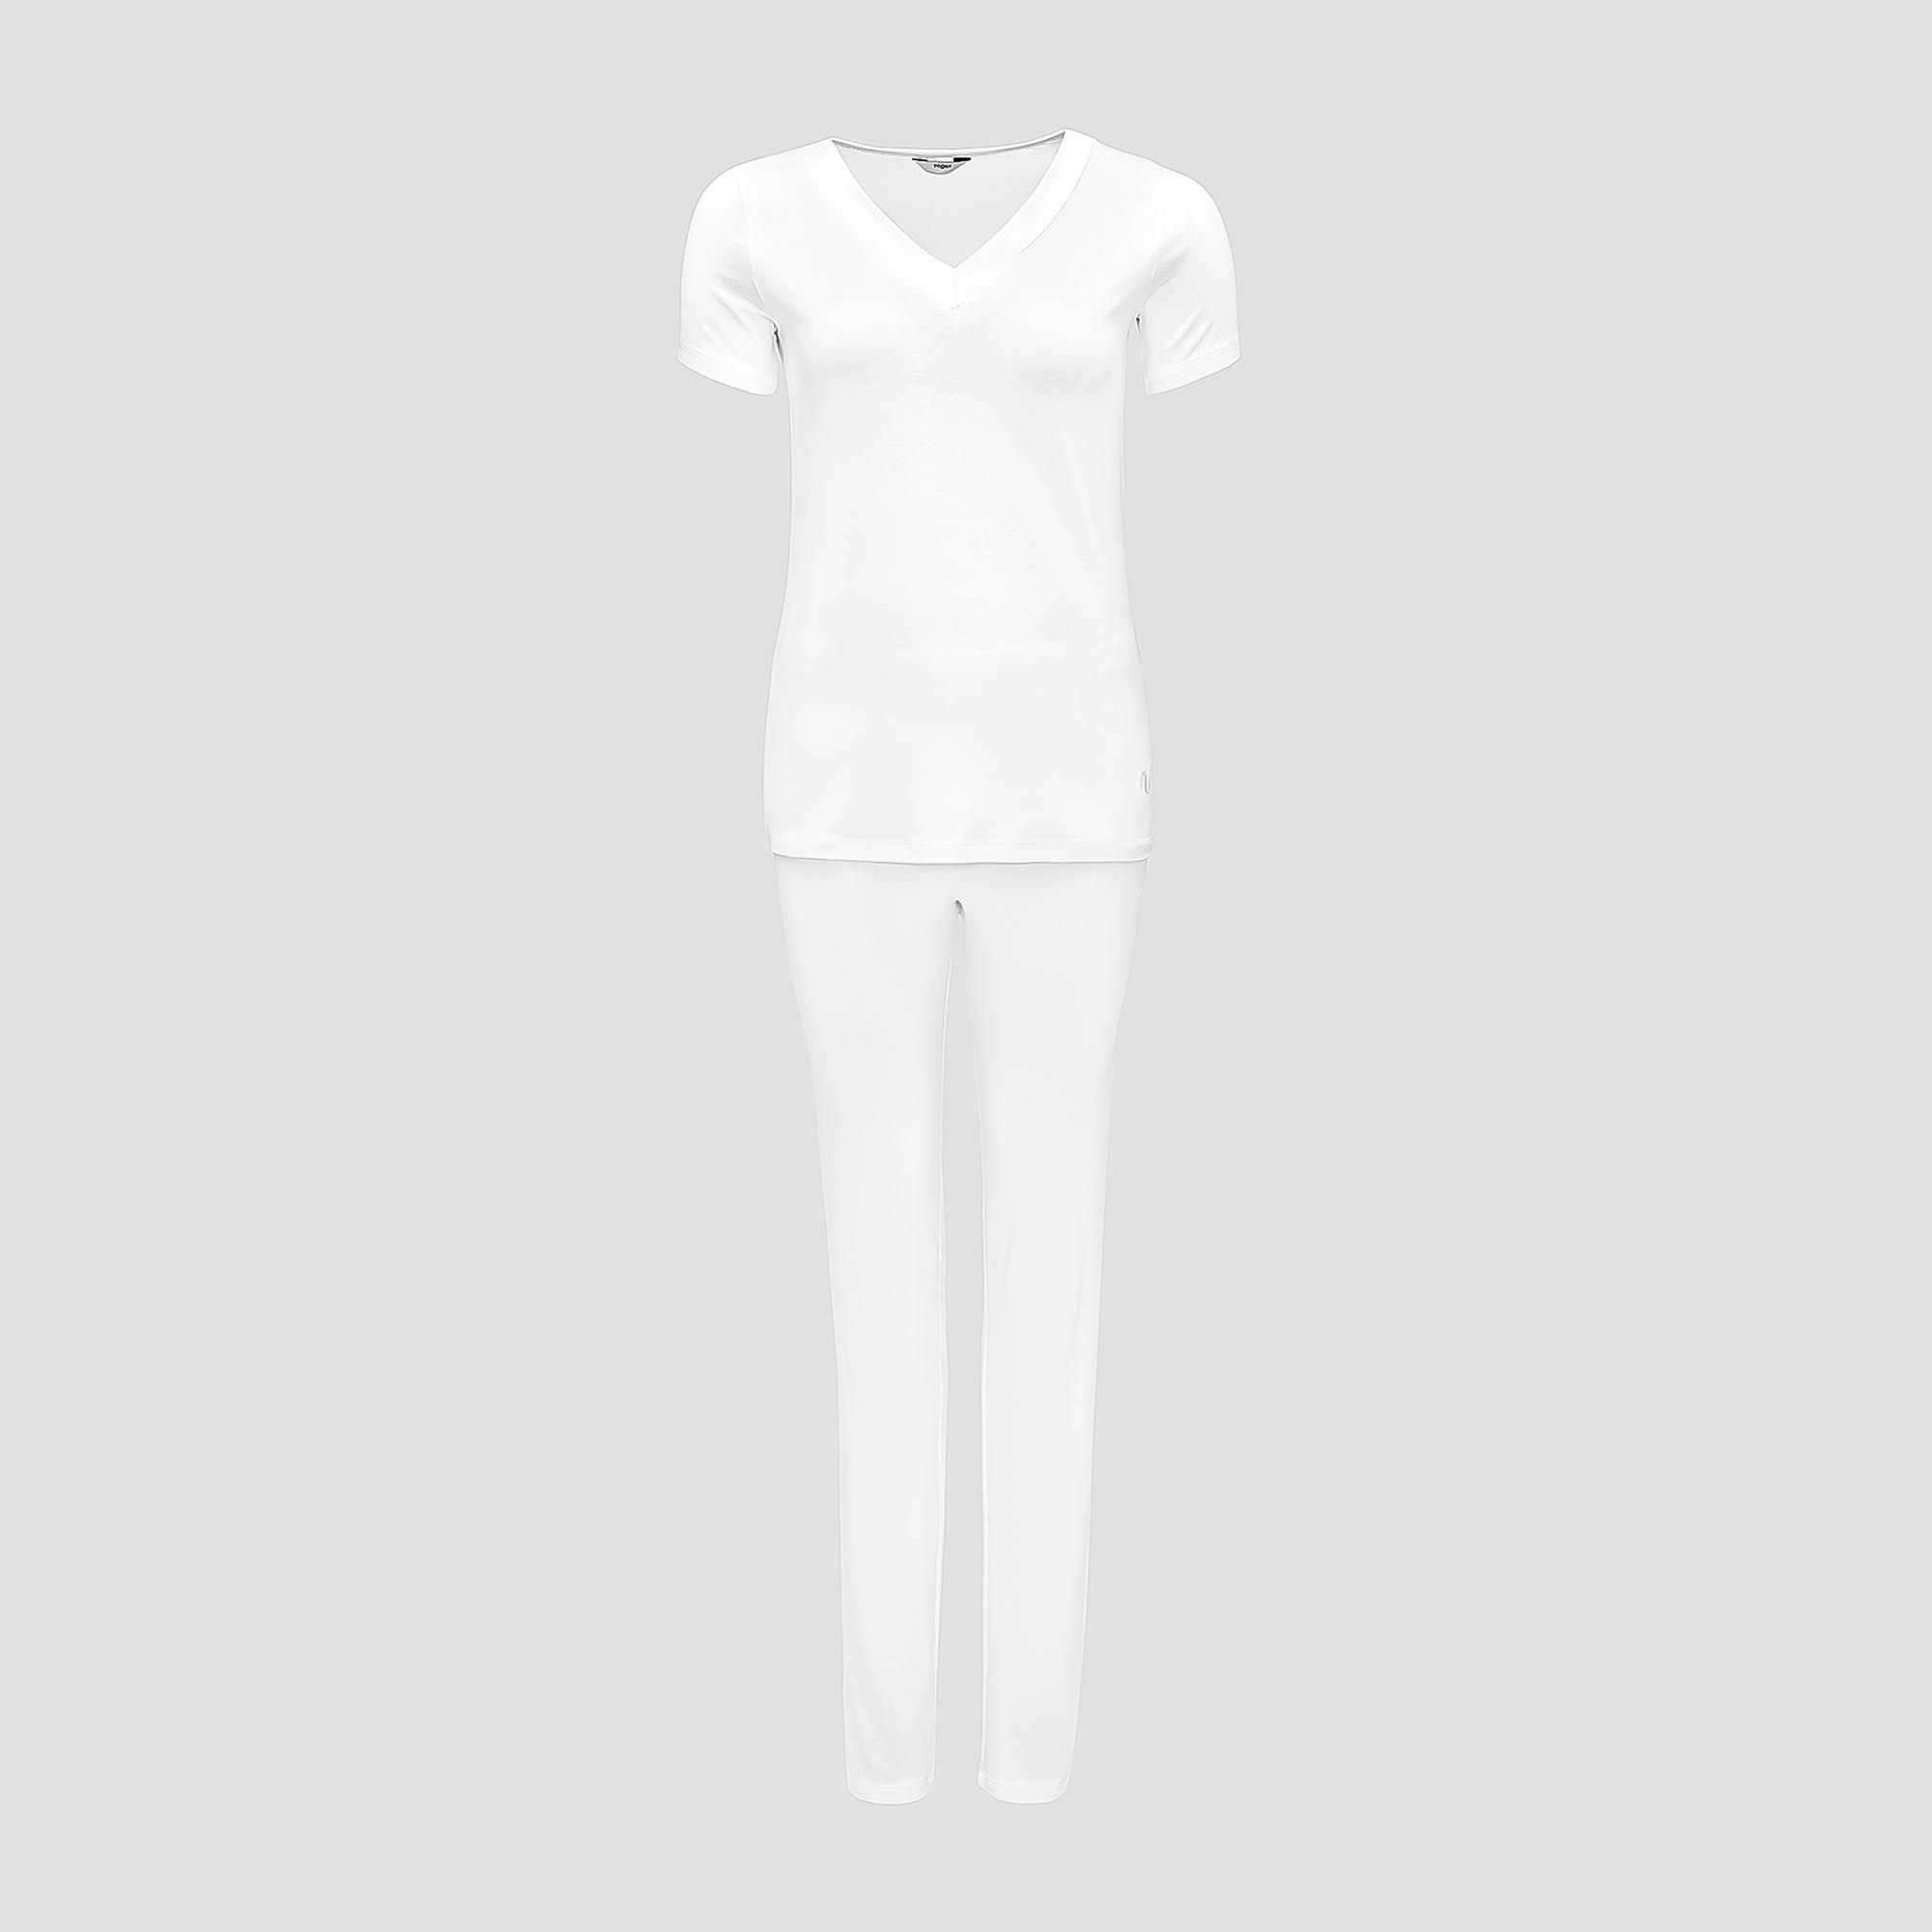 Пижама Togas Ингелла белая женская S(44) 2 предмета пижама сорочка брюки